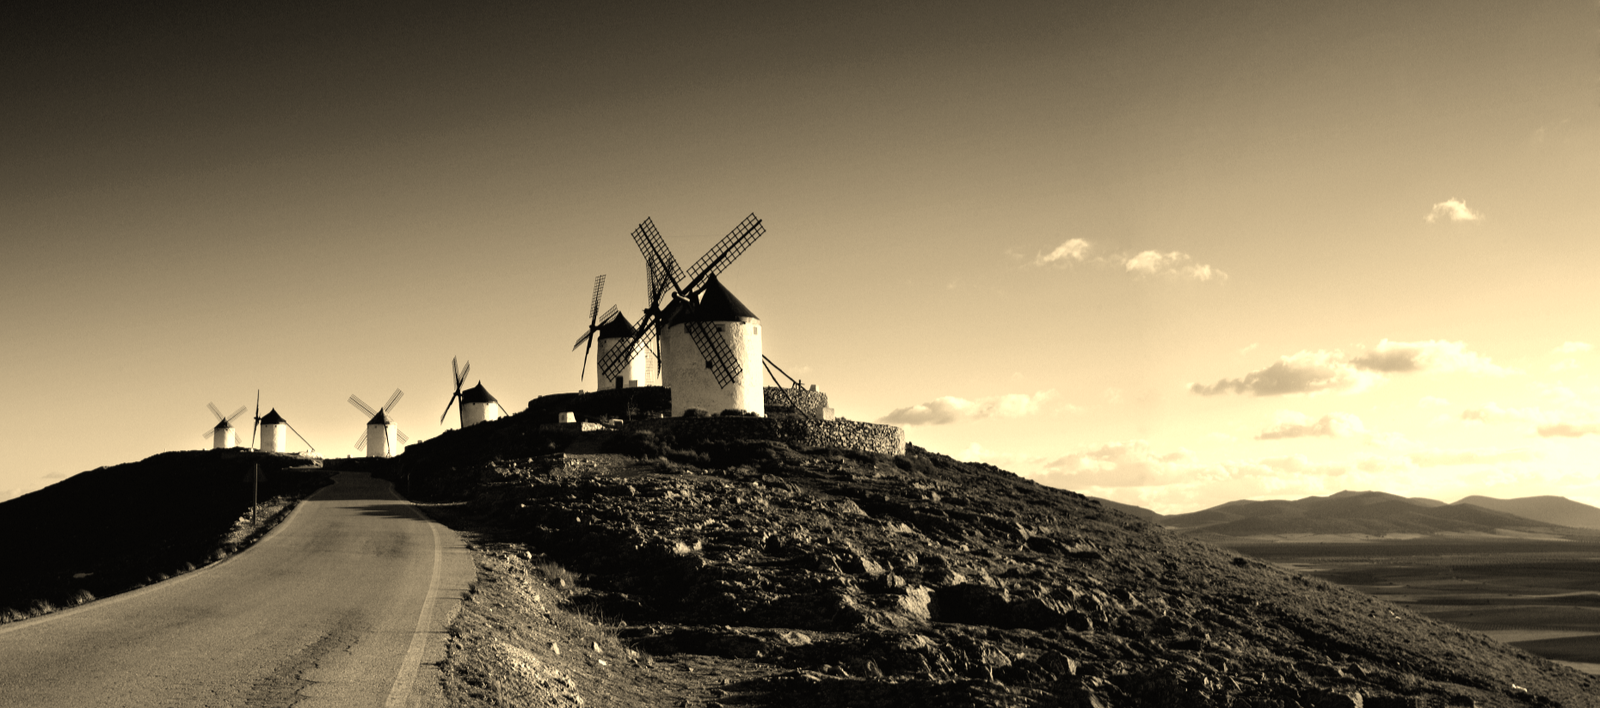 la route de Don Quichotte en Espagne